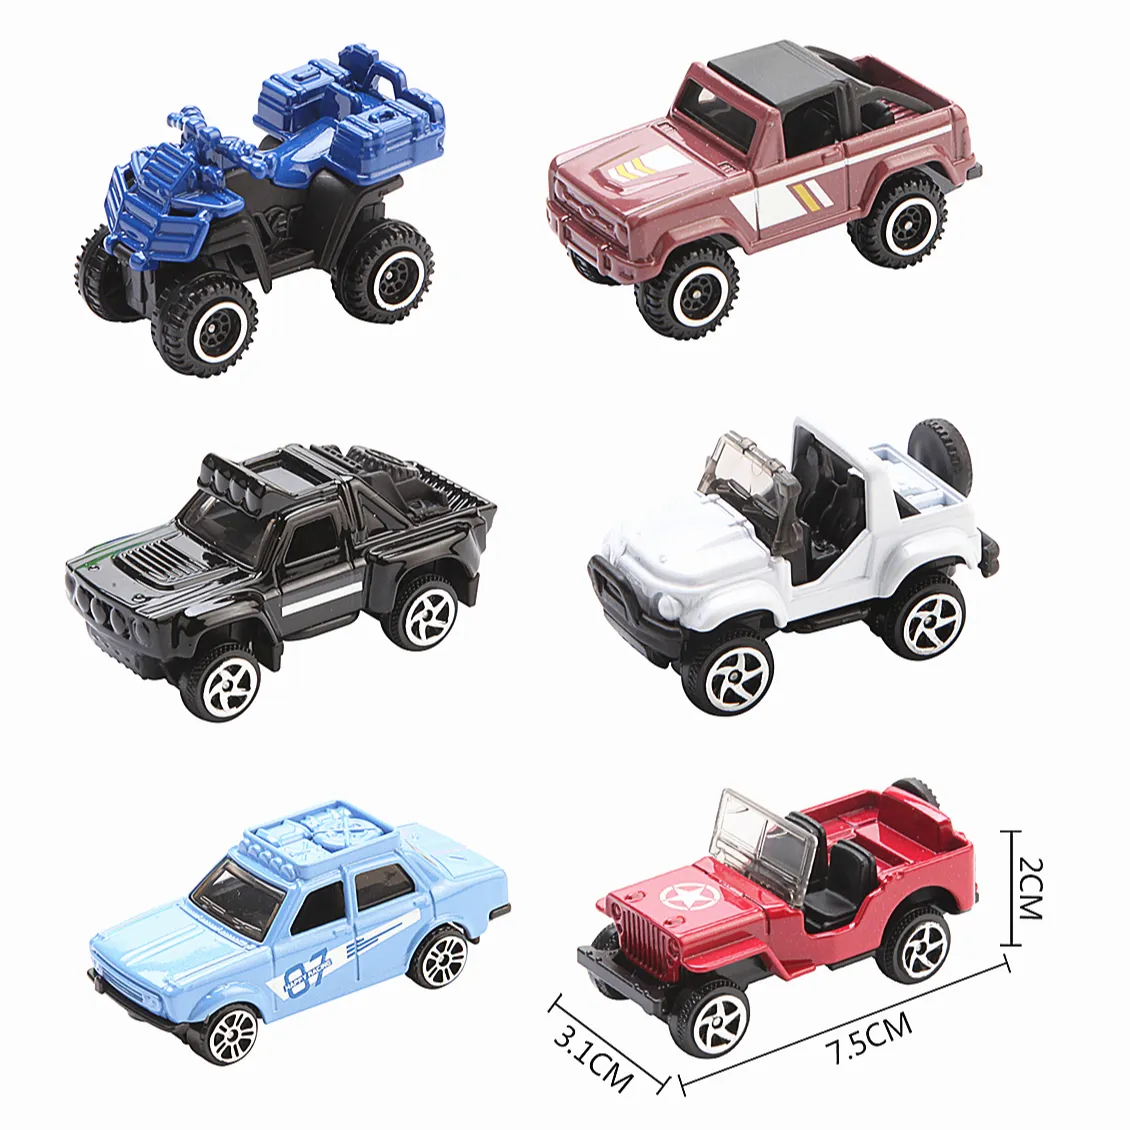 1:64 Hochwertiges Werbe spielzeug Diecast Miniature Metal Toy Car